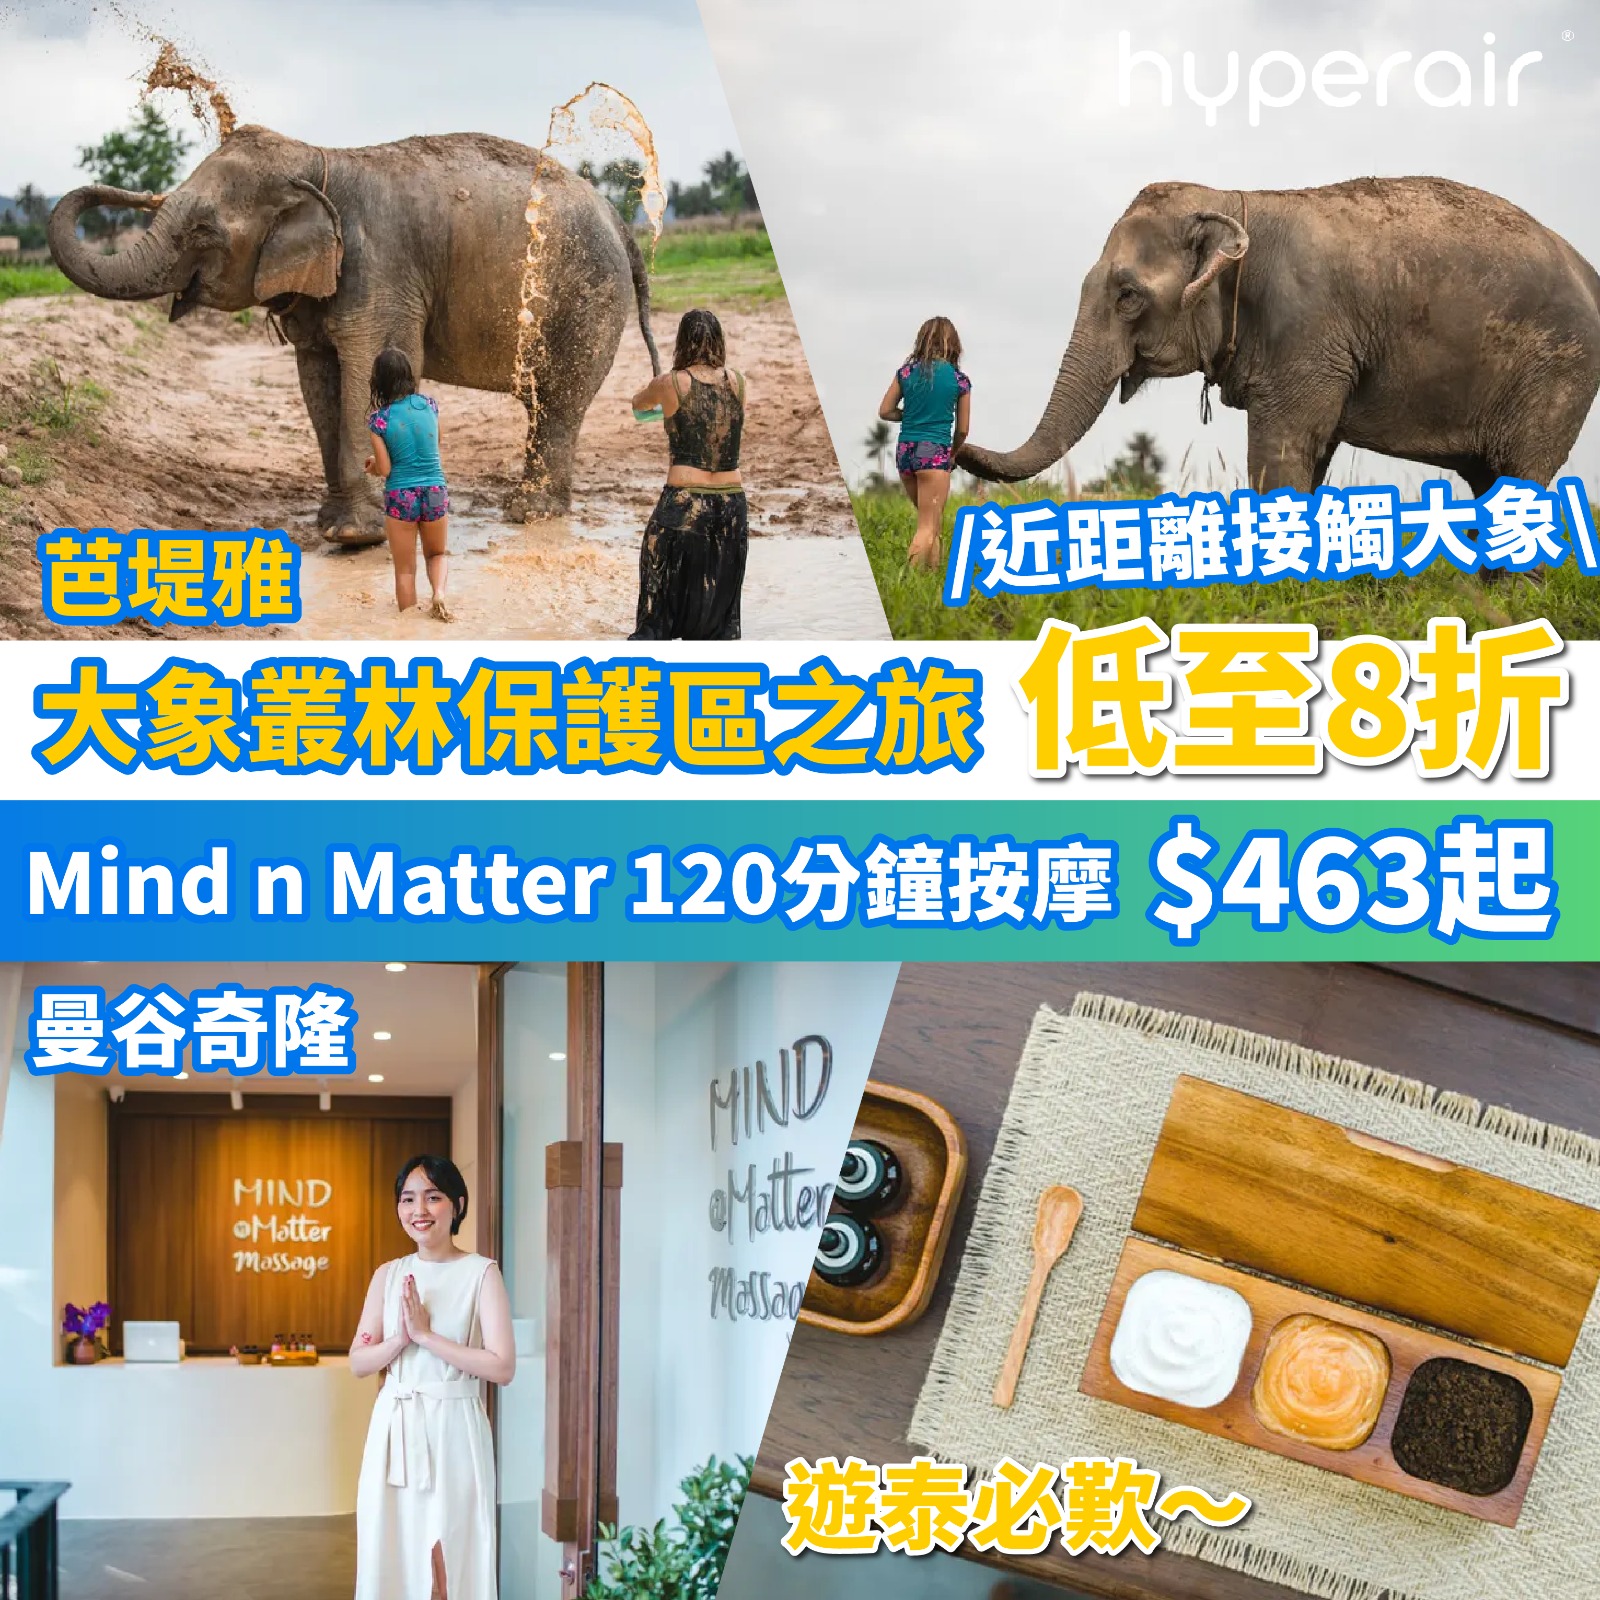 3月26日 9PM 泰國兩大活動8折優惠：芭達雅大象叢林保護區之旅、曼谷奇Mind n Matter按摩體驗！